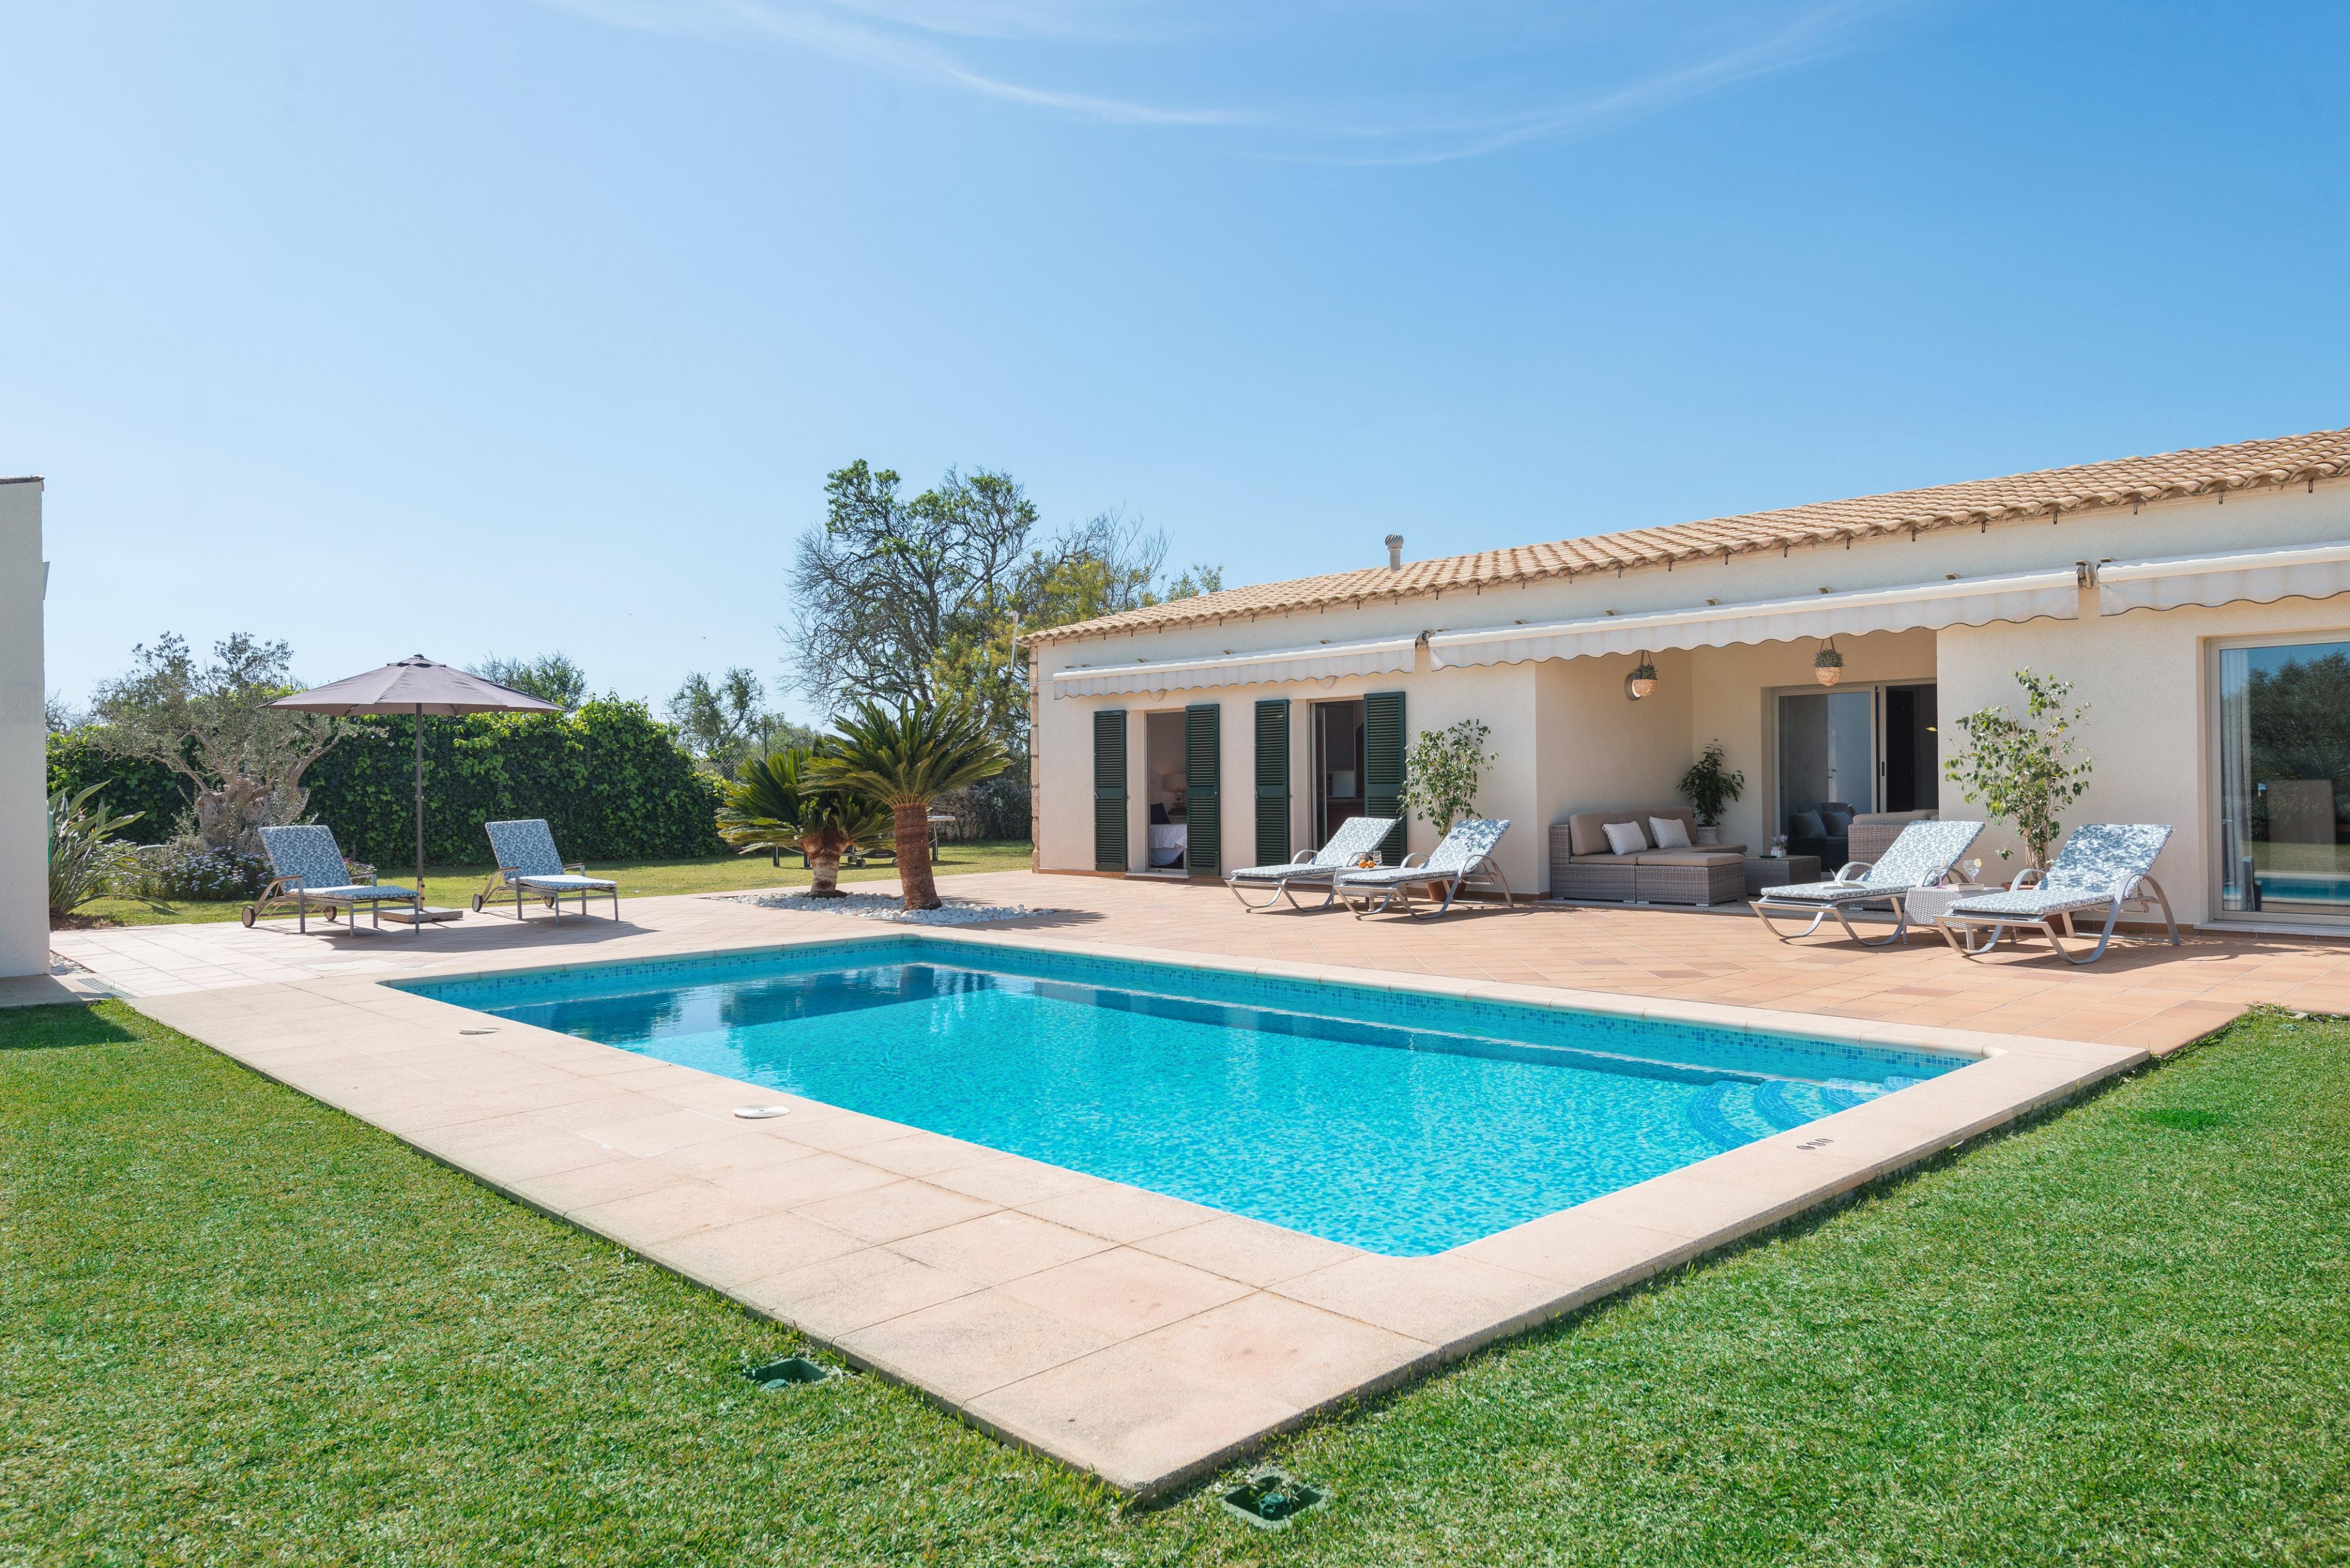 Property Image 2 - SA FINCA - Villa with private pool in MURO. Free WiFi